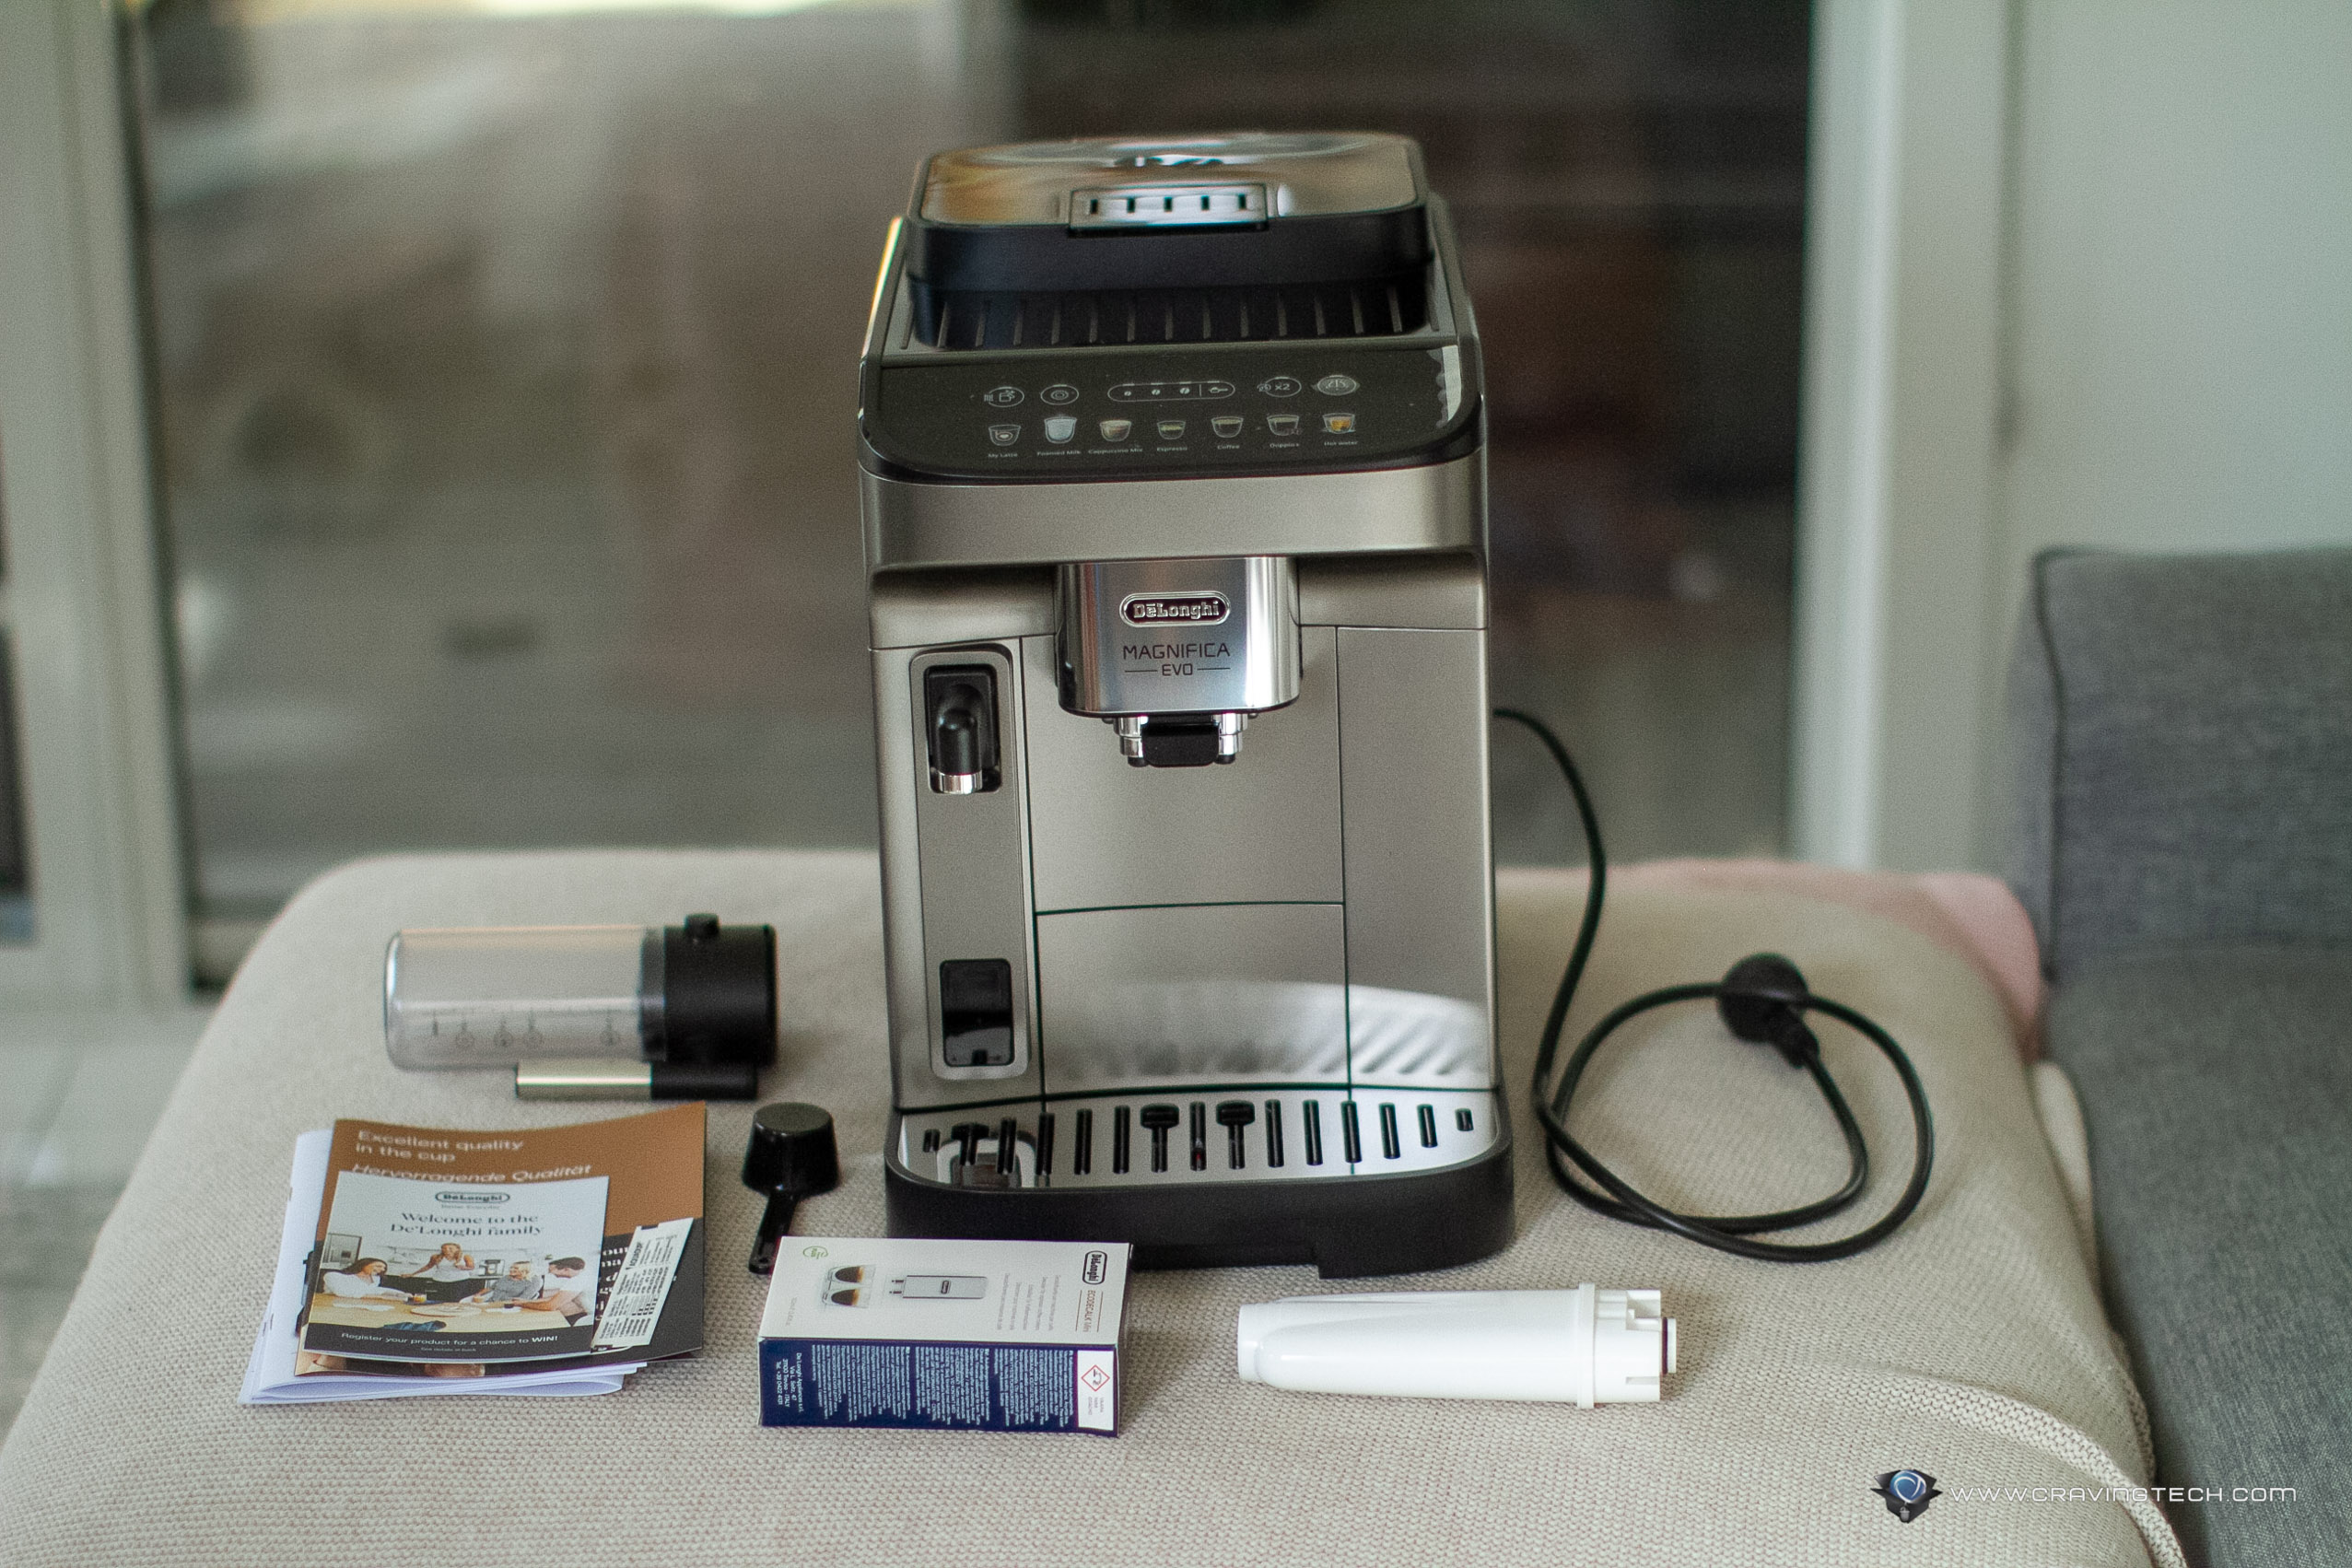 Delonghi Magnifica Evo Superautomatic Coffee Machine Review 